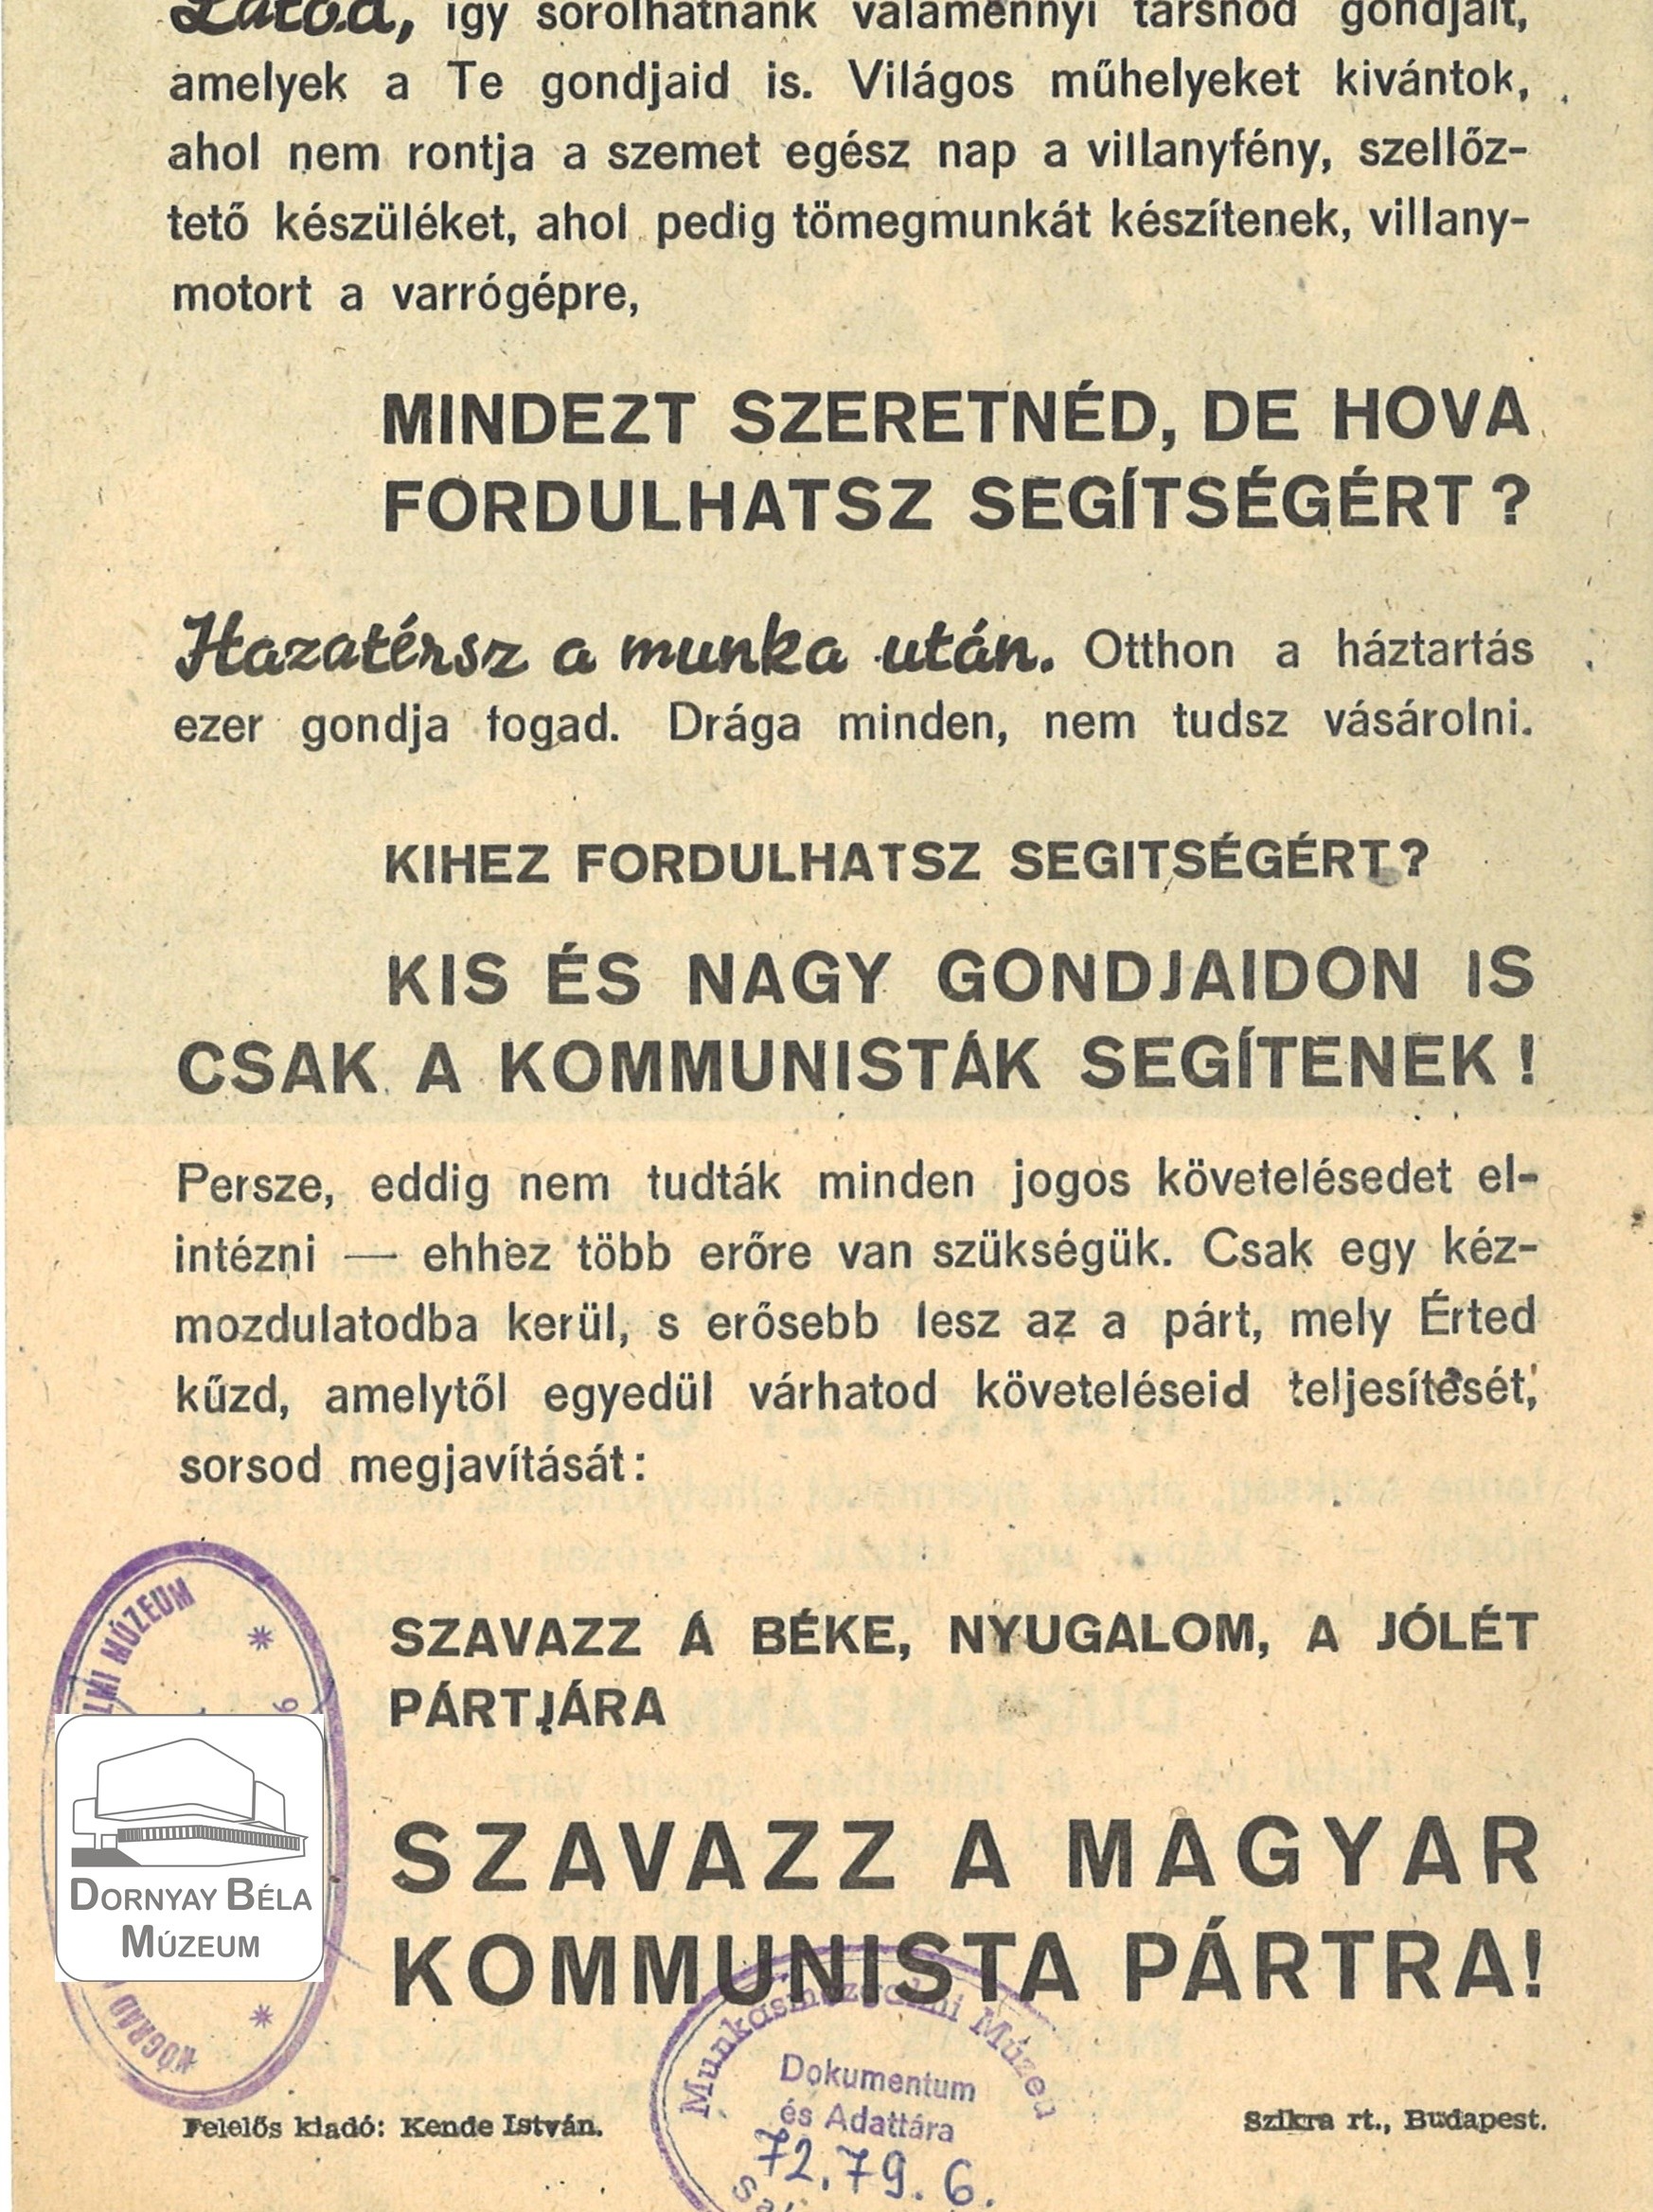 Az MKP választási röpirata. Béke, nyugalom, jólét! (Dornyay Béla Múzeum, Salgótarján CC BY-NC-SA)